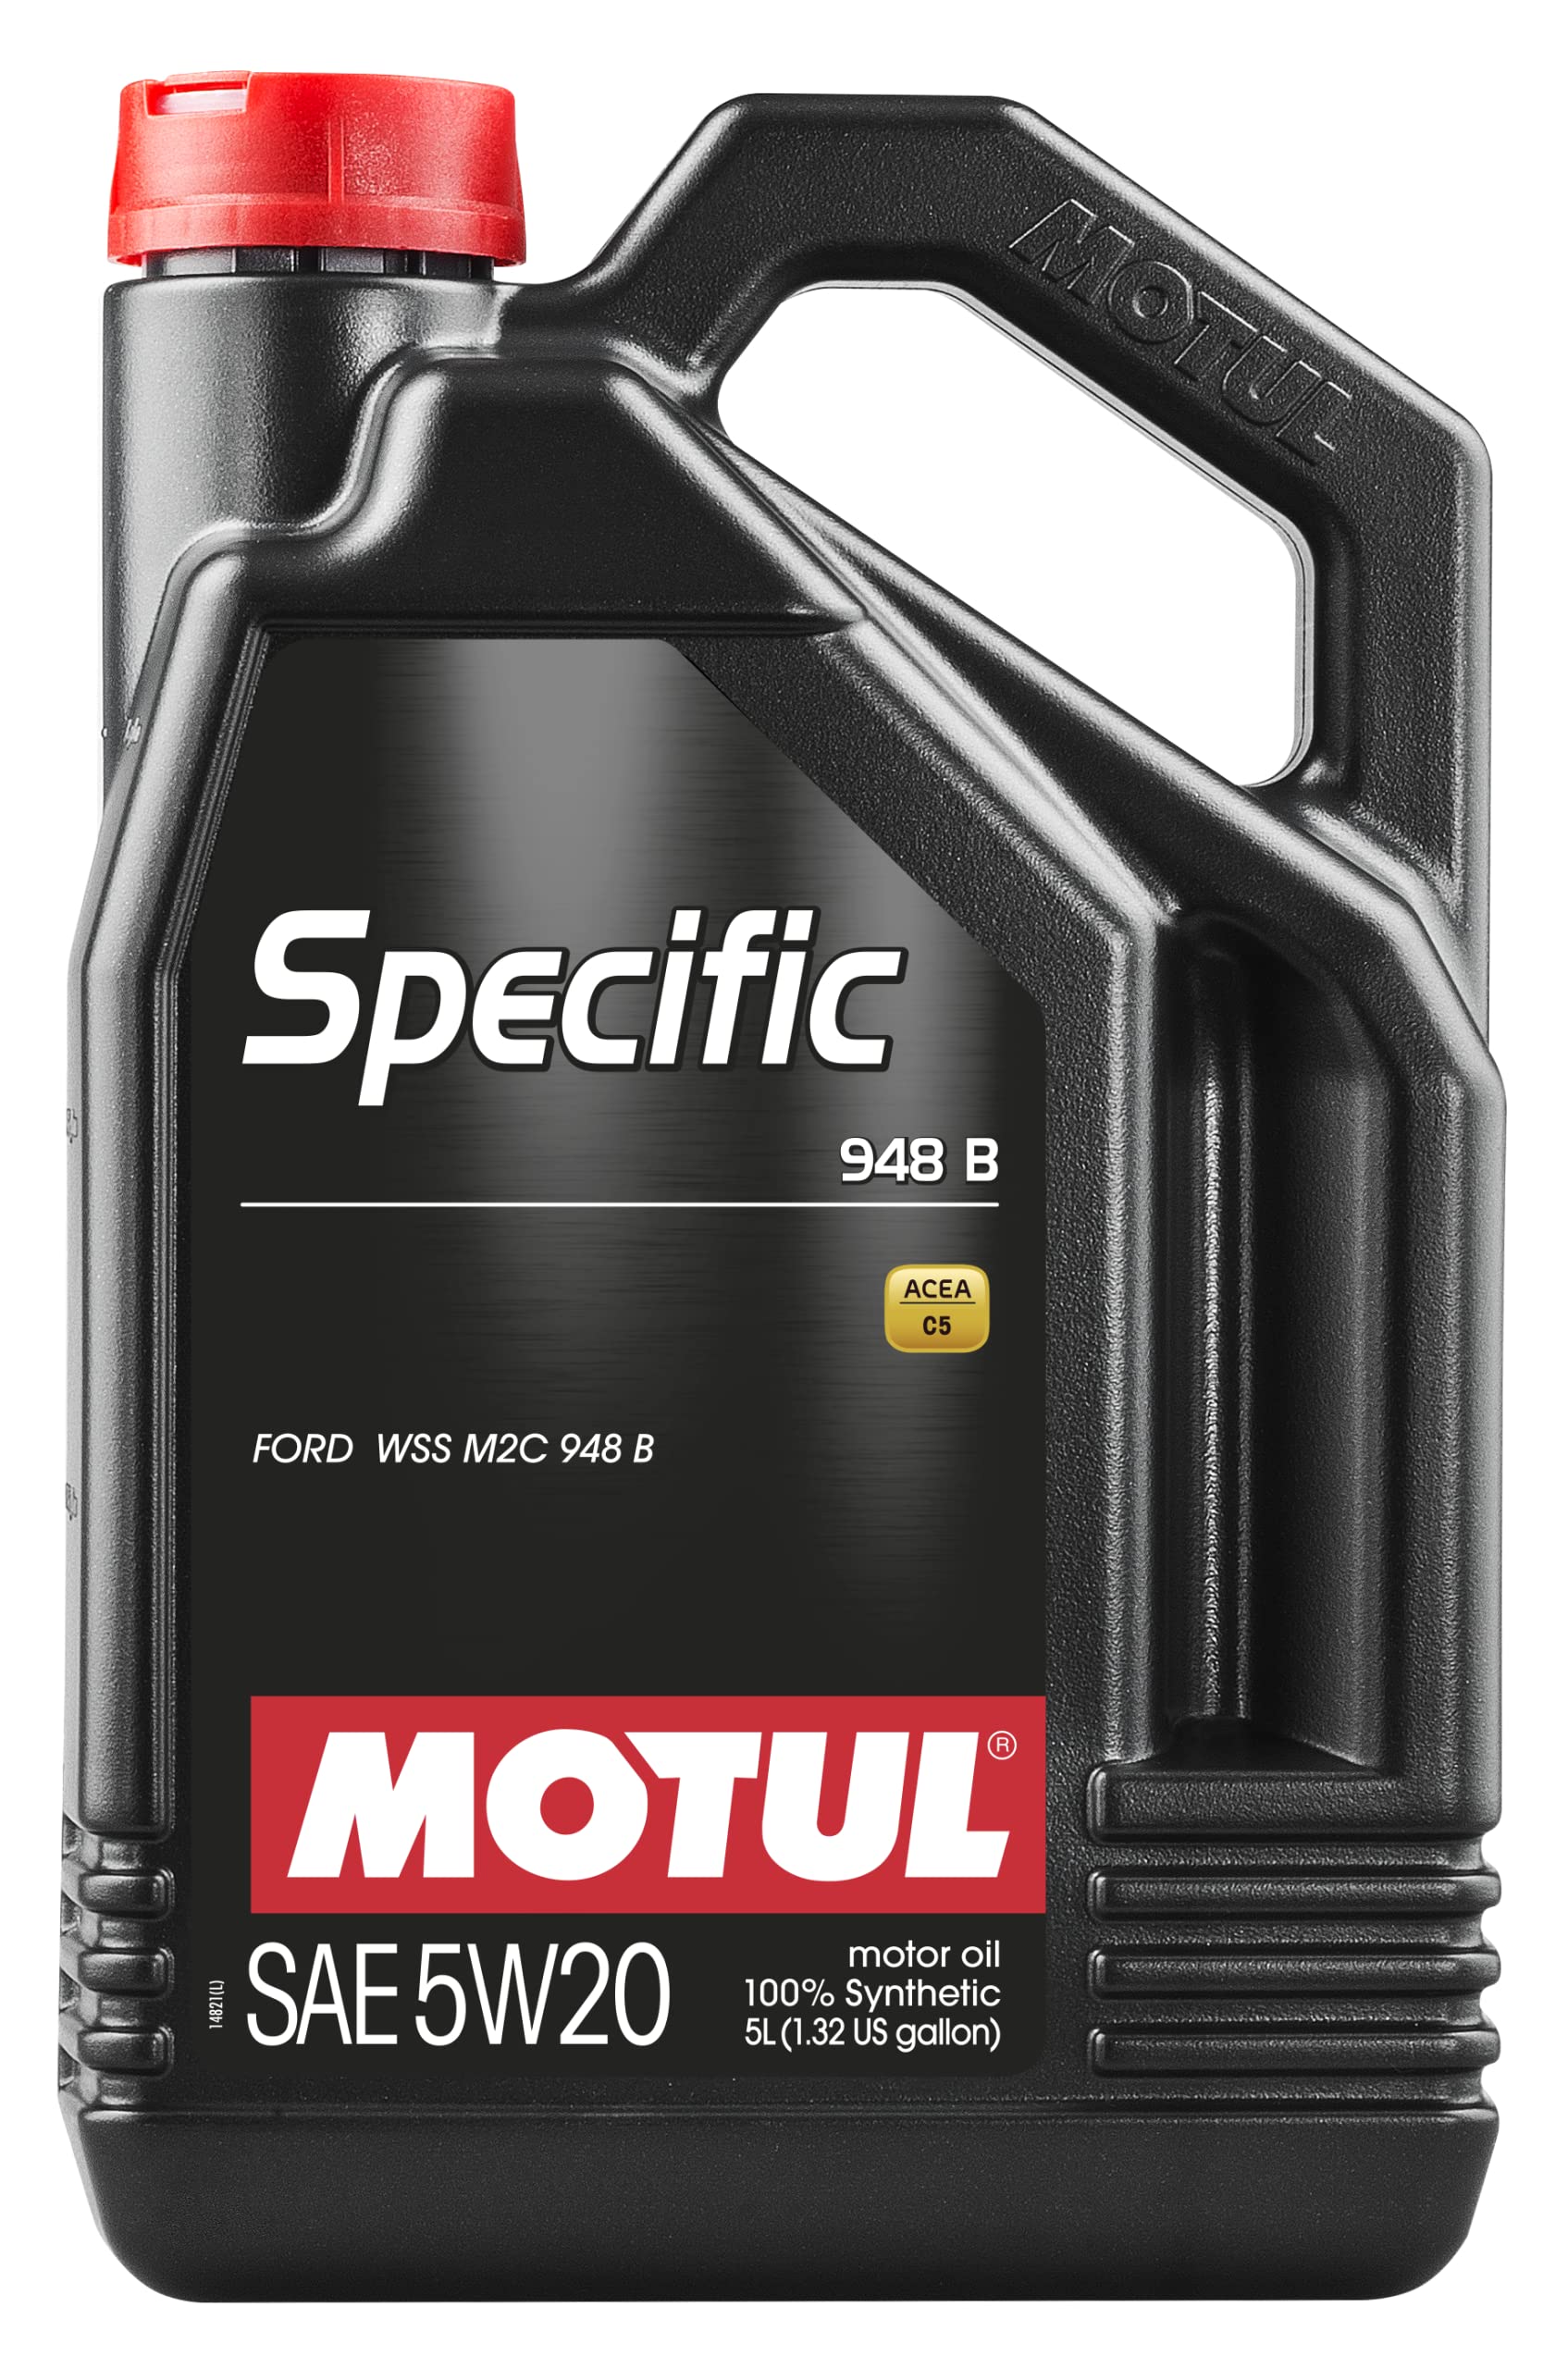 MOTUL 106352/74 Specific 948B von Motul